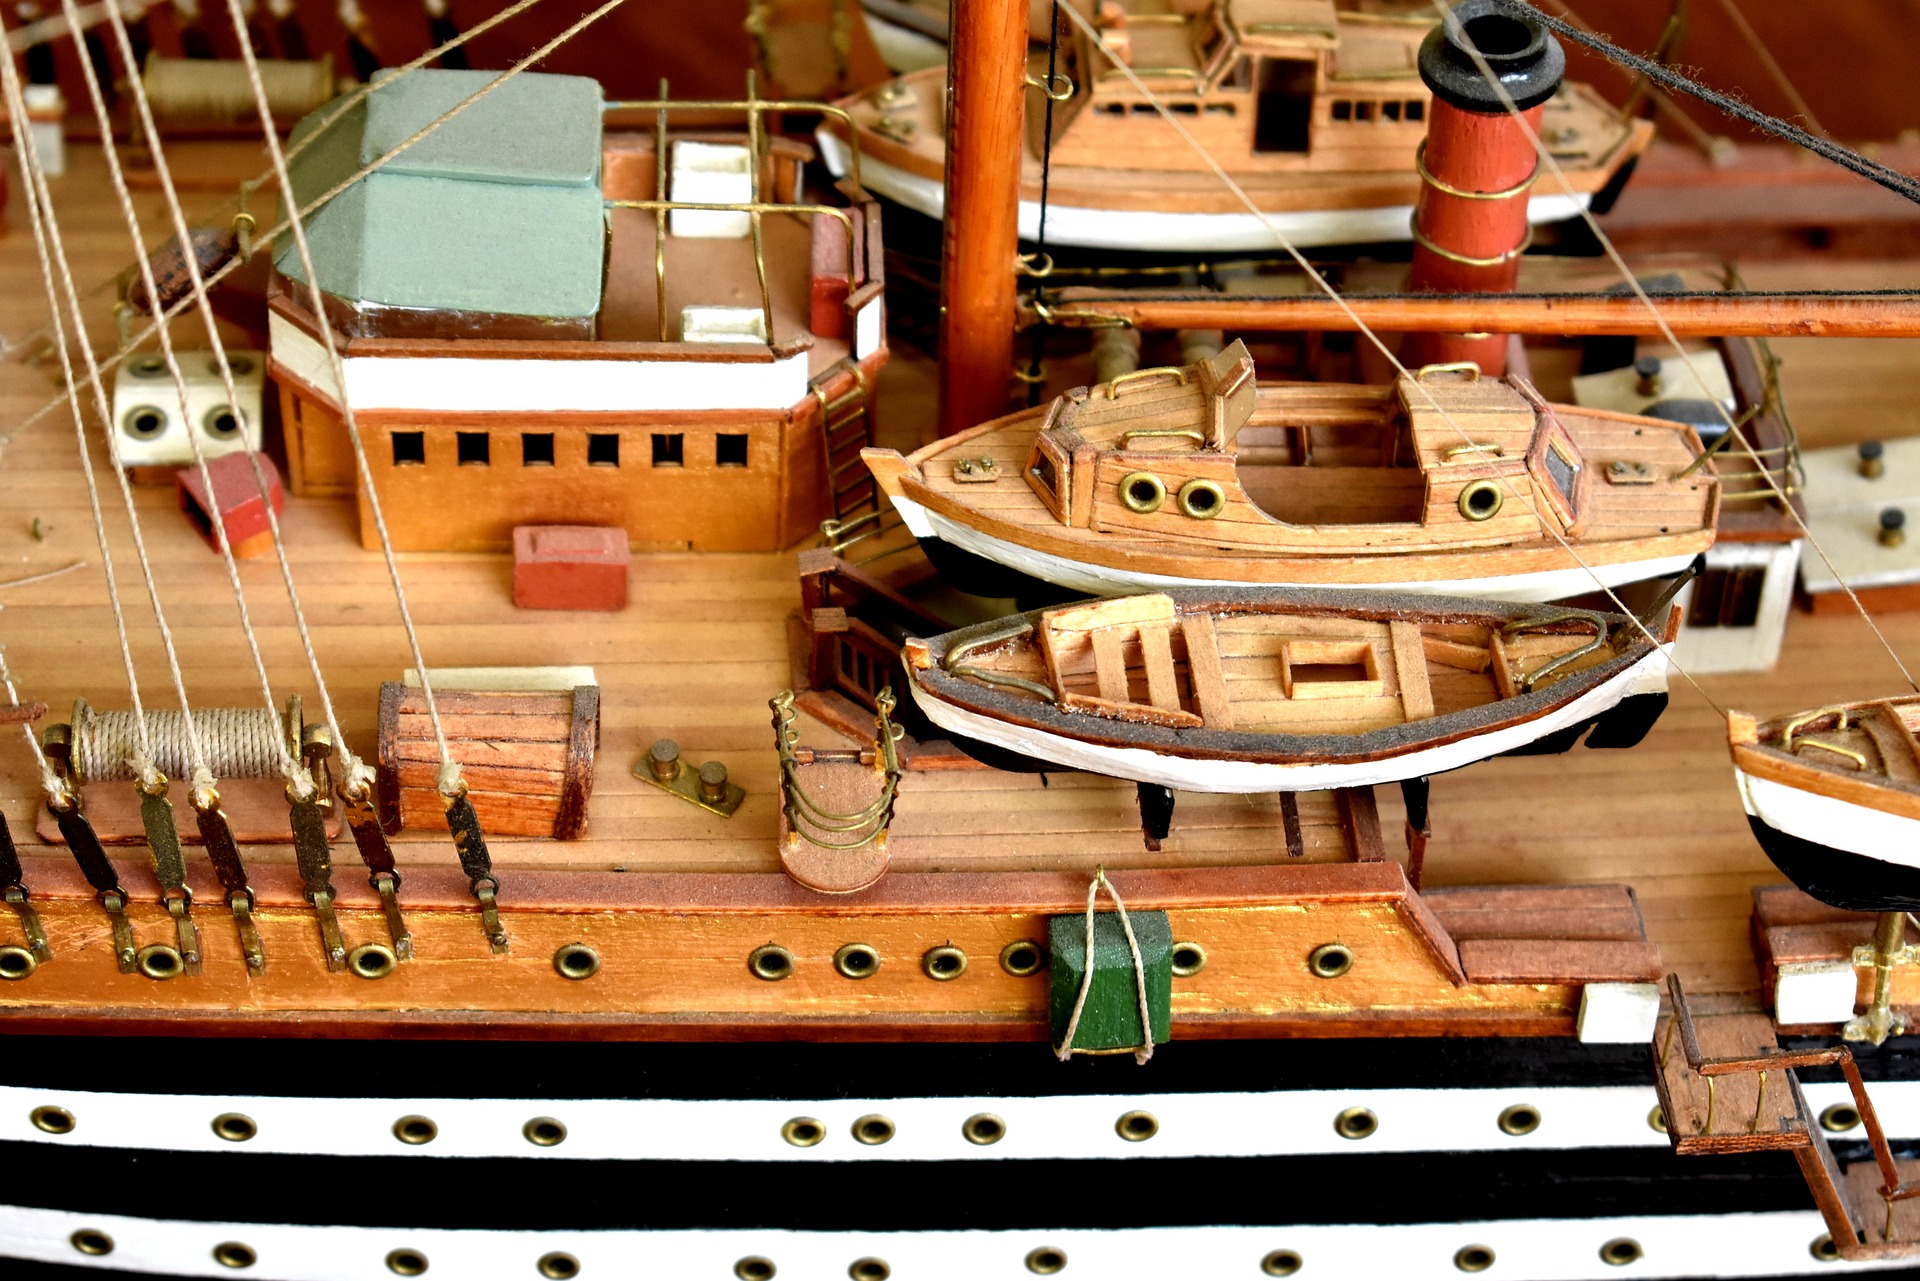 Mark bouwt aan modelschip te weten overgrootmoeder ook op schip zat – Modelbouw.nl